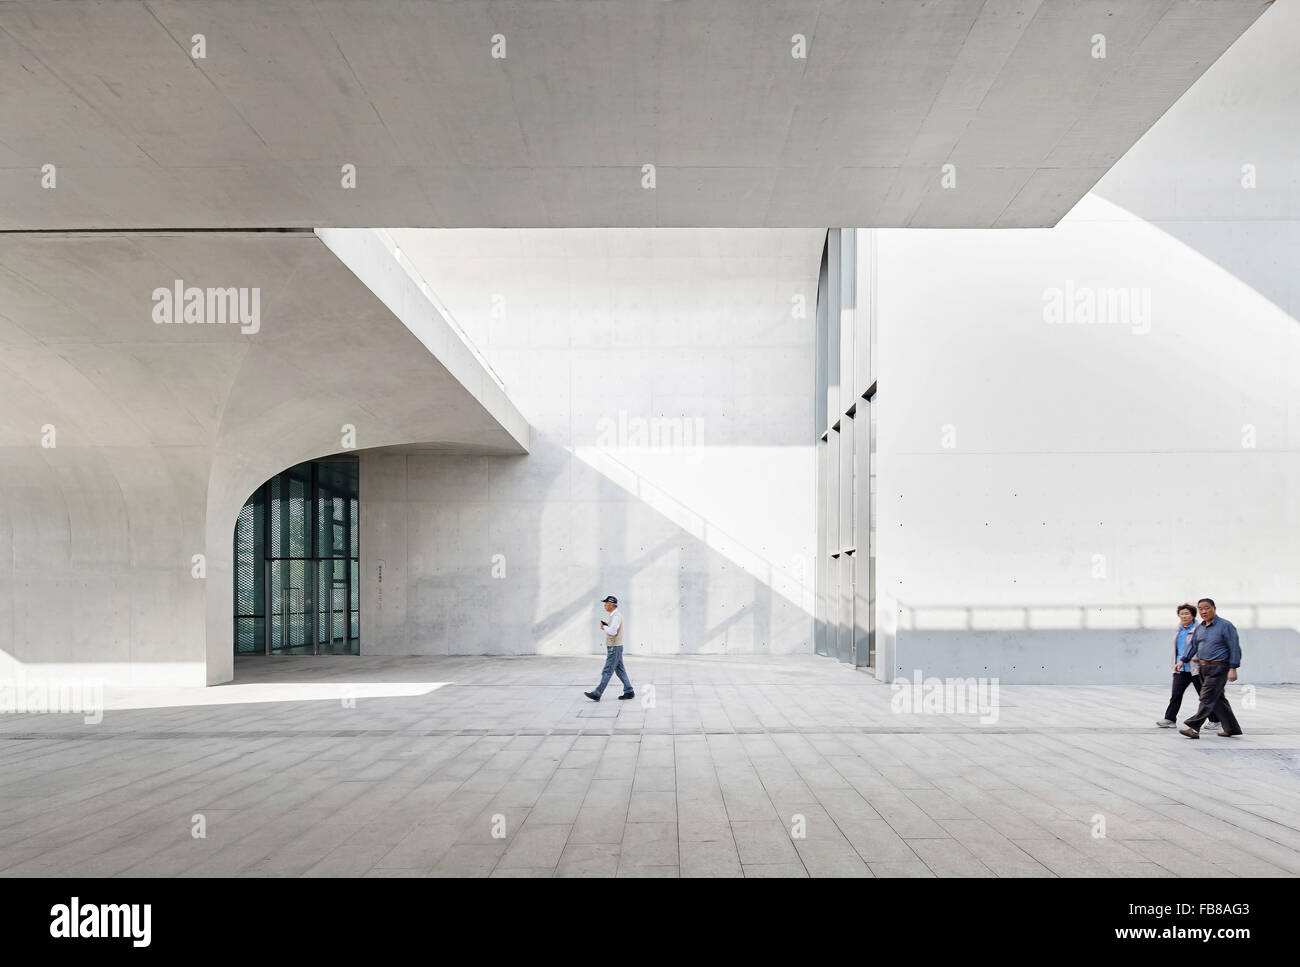 Columnas de hormigón con doseles abovedado creando espacios de circulación. Museo largo West Bund, Shanghai, China. Arquitecto: Atelier Deshau Foto de stock